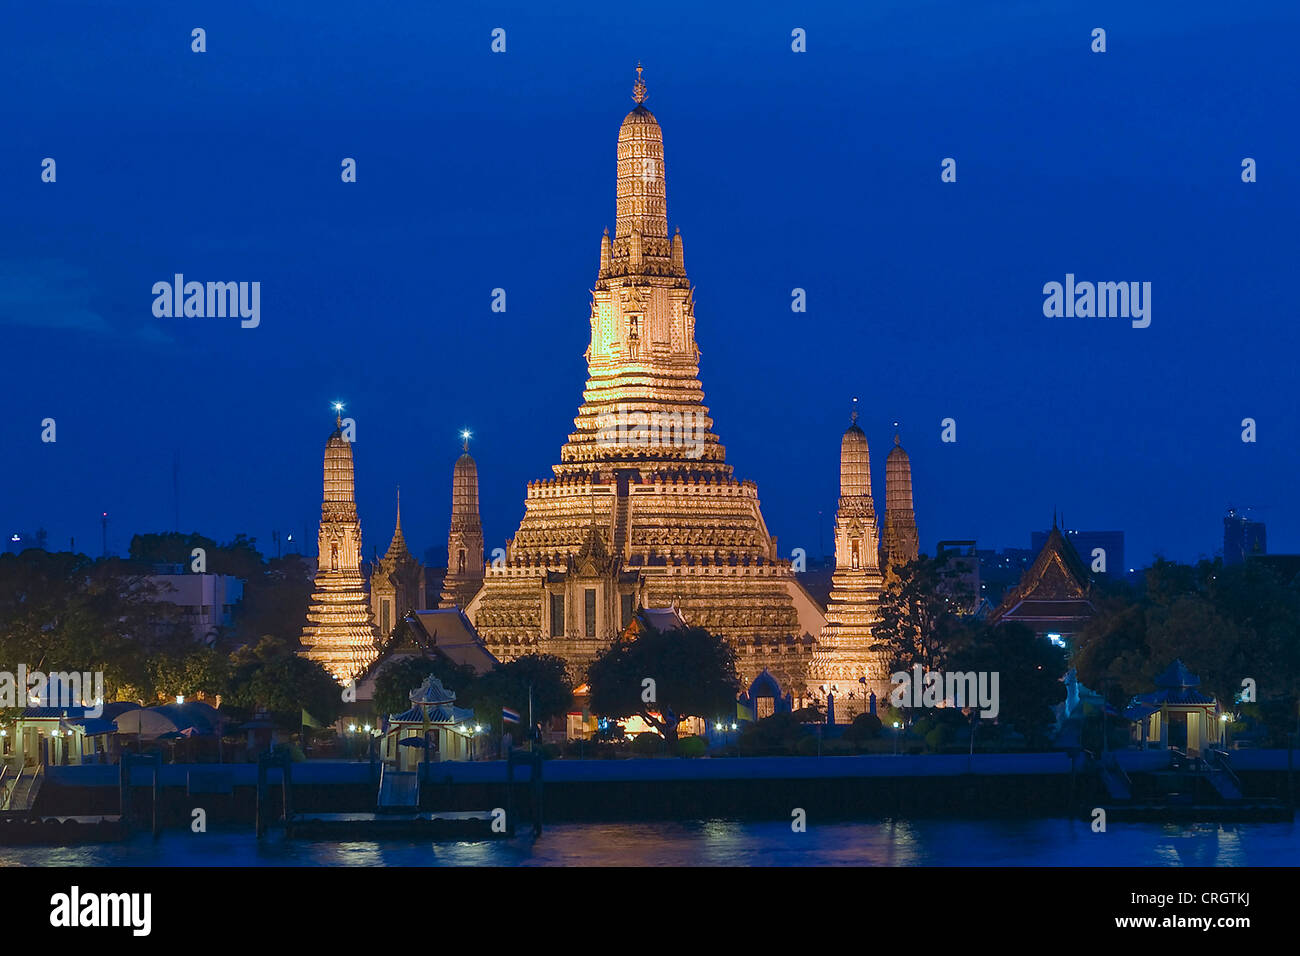 Wat Arun temple at night, Thailand, Bangkok Stock Photo